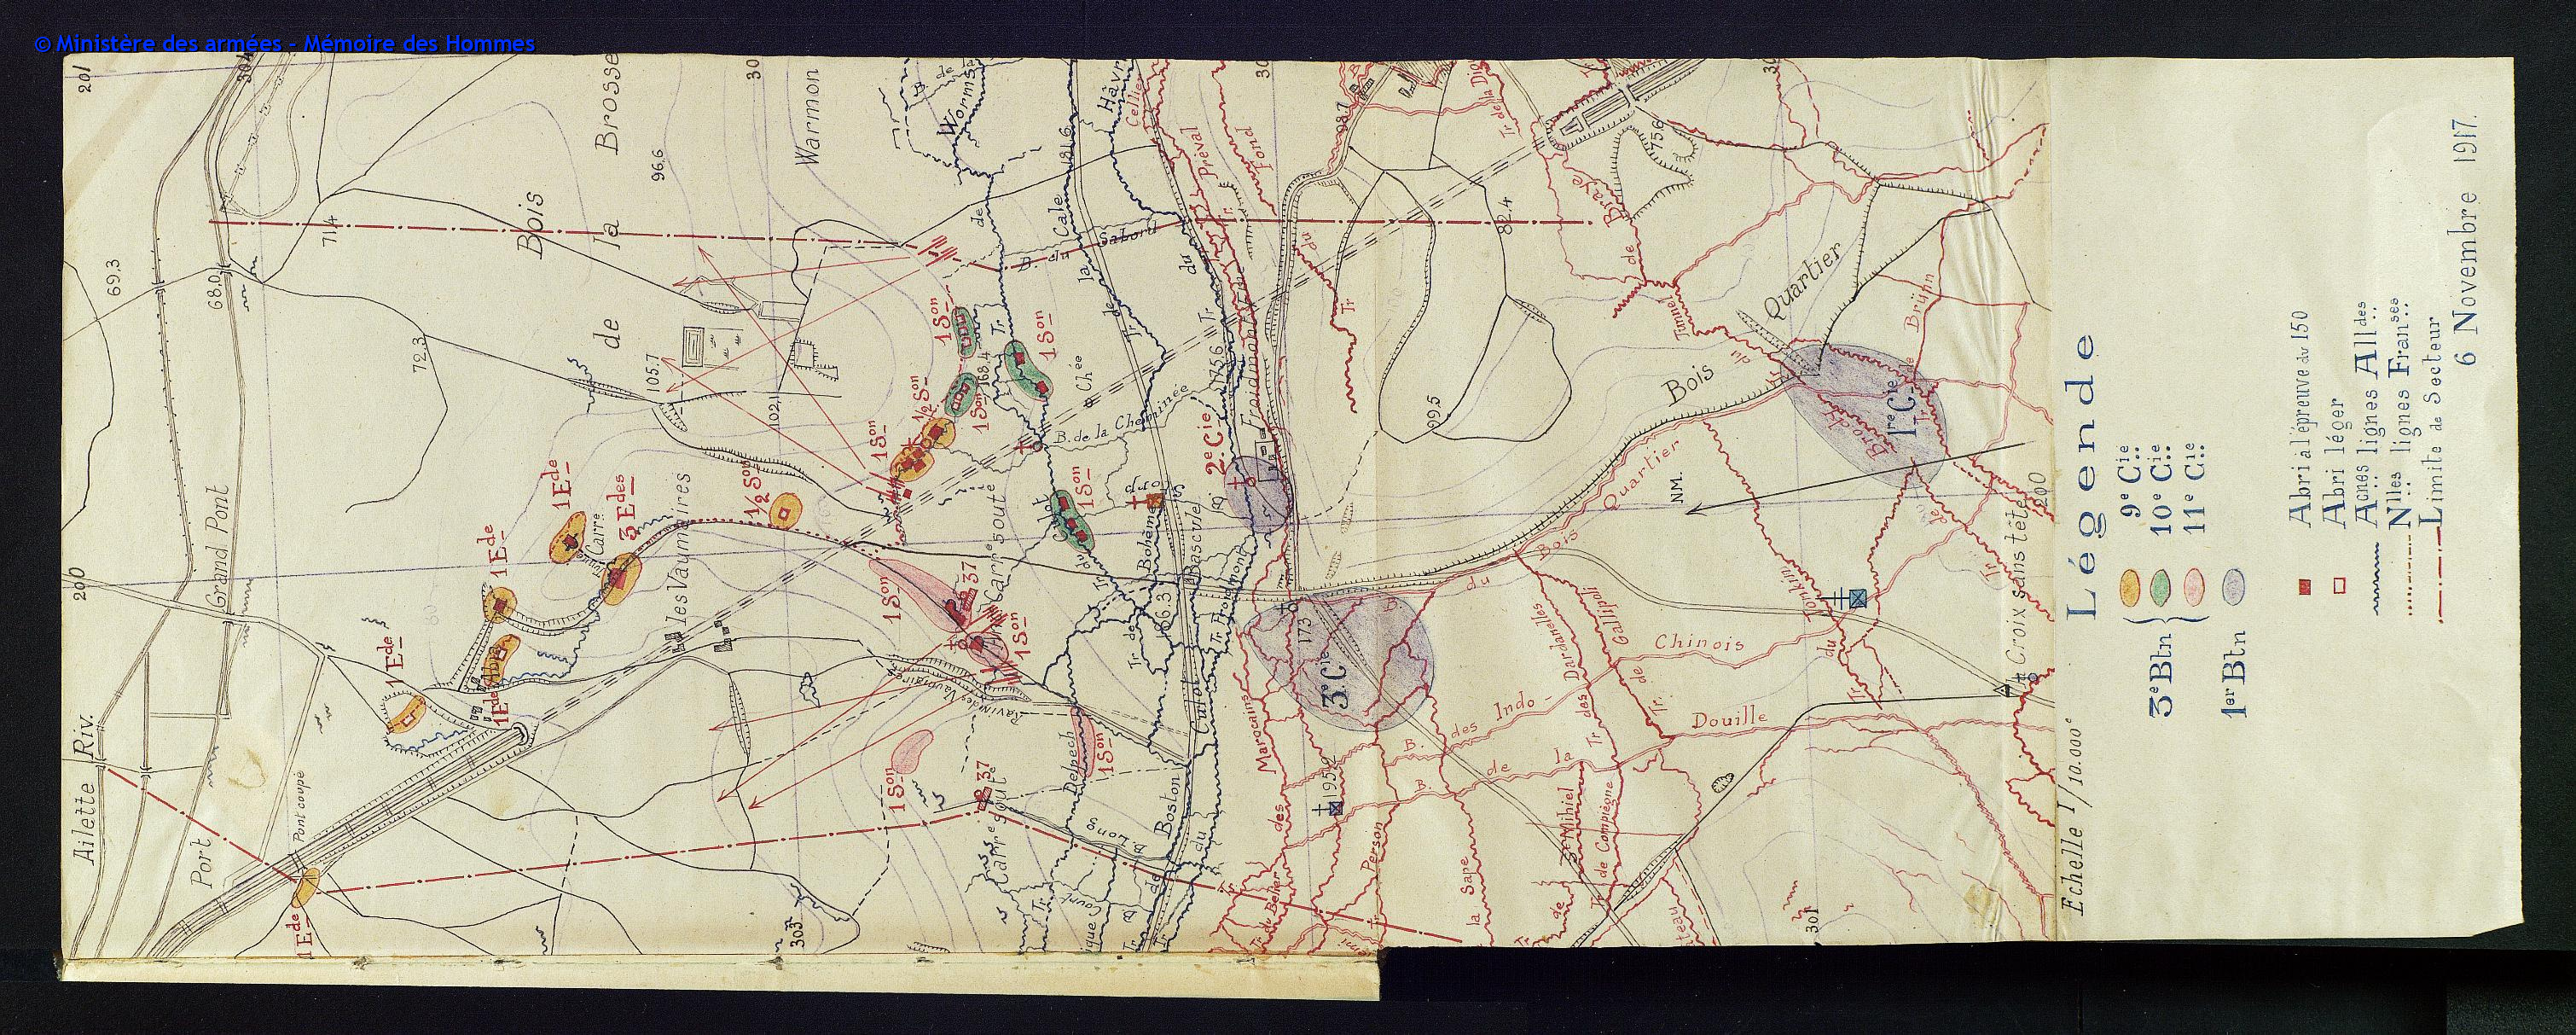 Vaumaires et Froidmont - secteur du 72e régiment d'infanterie le 6 novembre 1917 